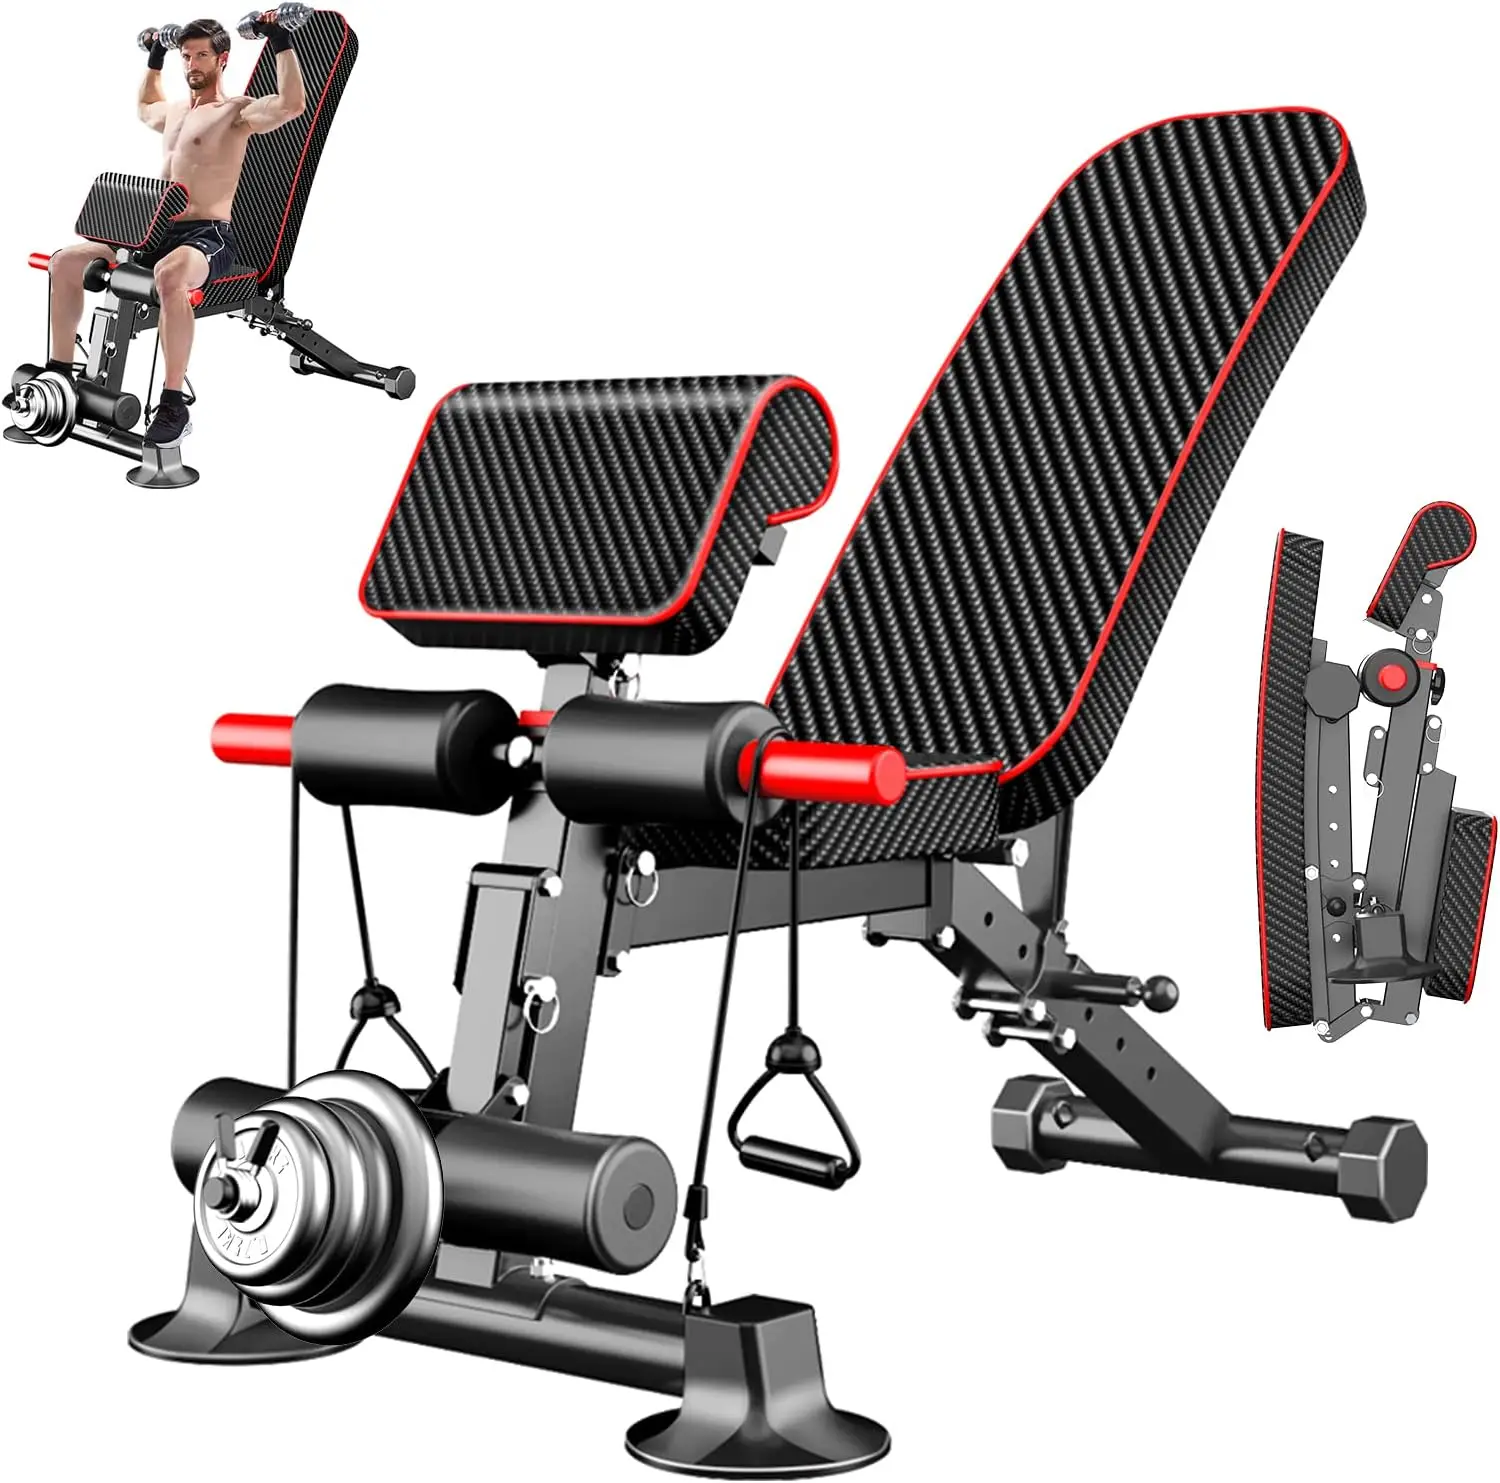 

Регулируемая весовая скамейка-полезные весовые скамейки для упражнений, конструкция бесплатной установки для портативной